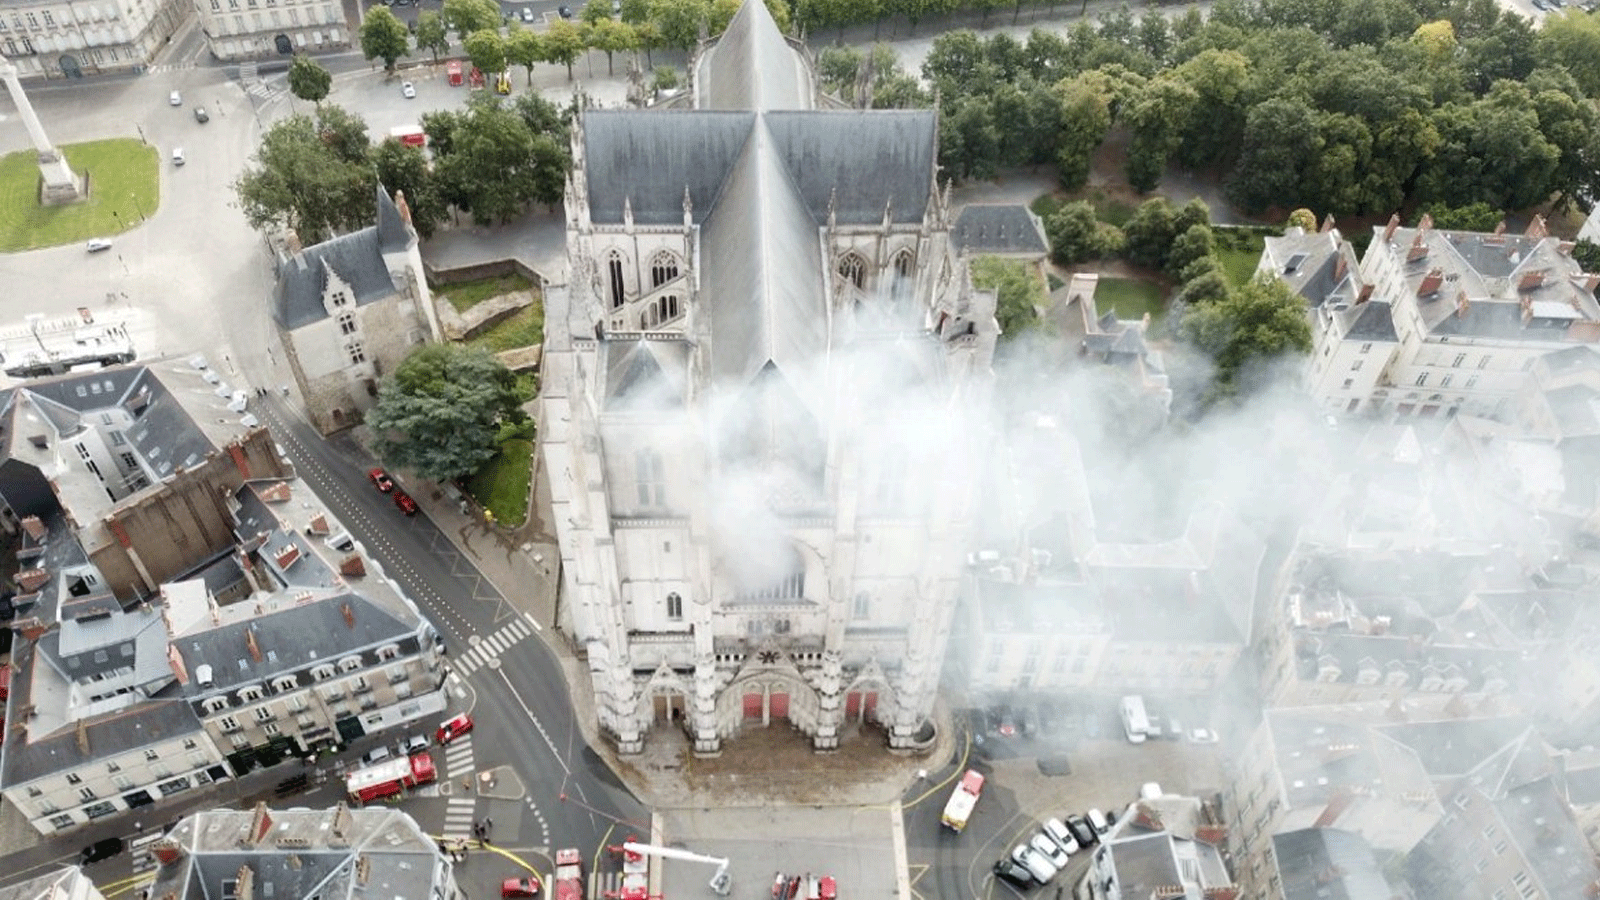 حريق كاتدرائية نانت في 18 تموز\ يوليو 2020 كان من الممكن أن يتسبب في أضرار تزيد عن 24 مليون يورو